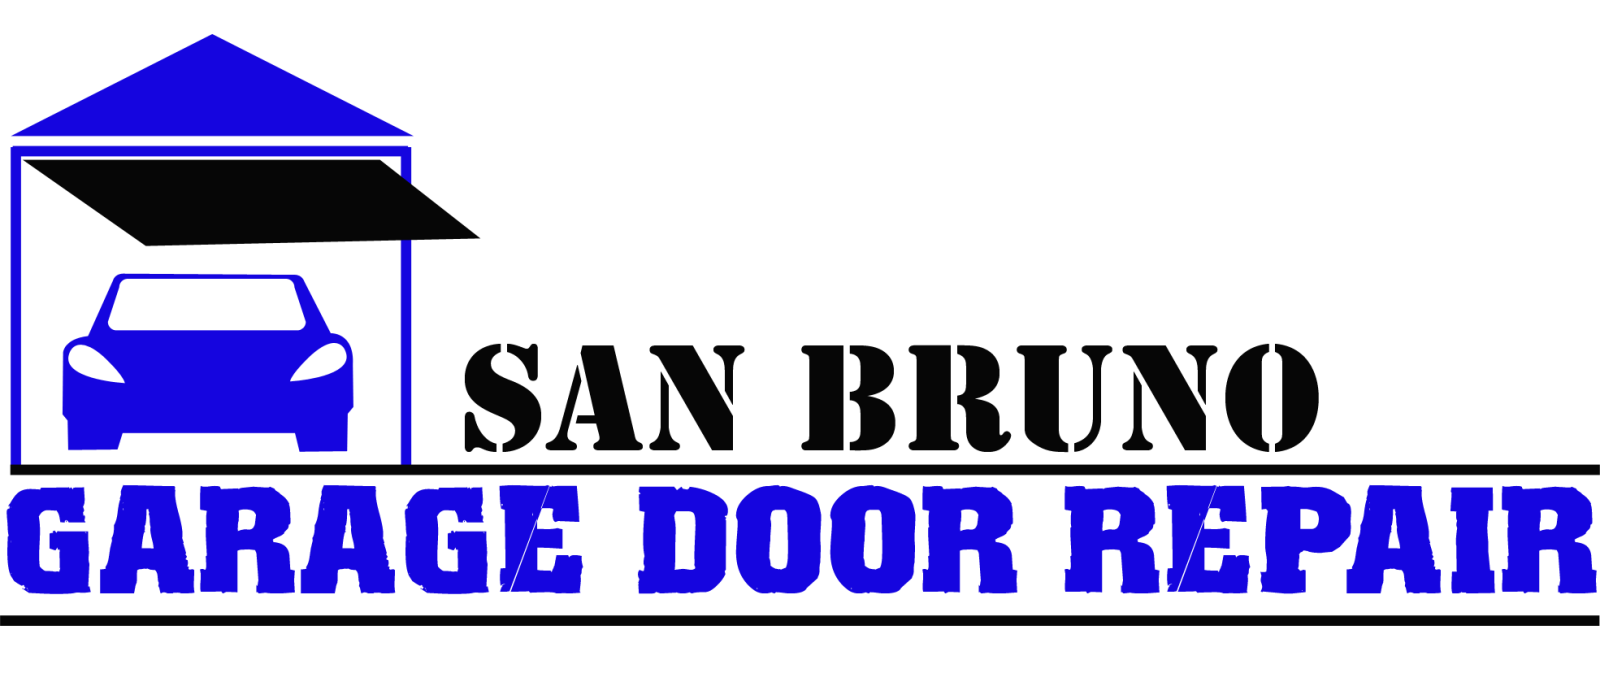  Garage Door Repair San Bruno,CA